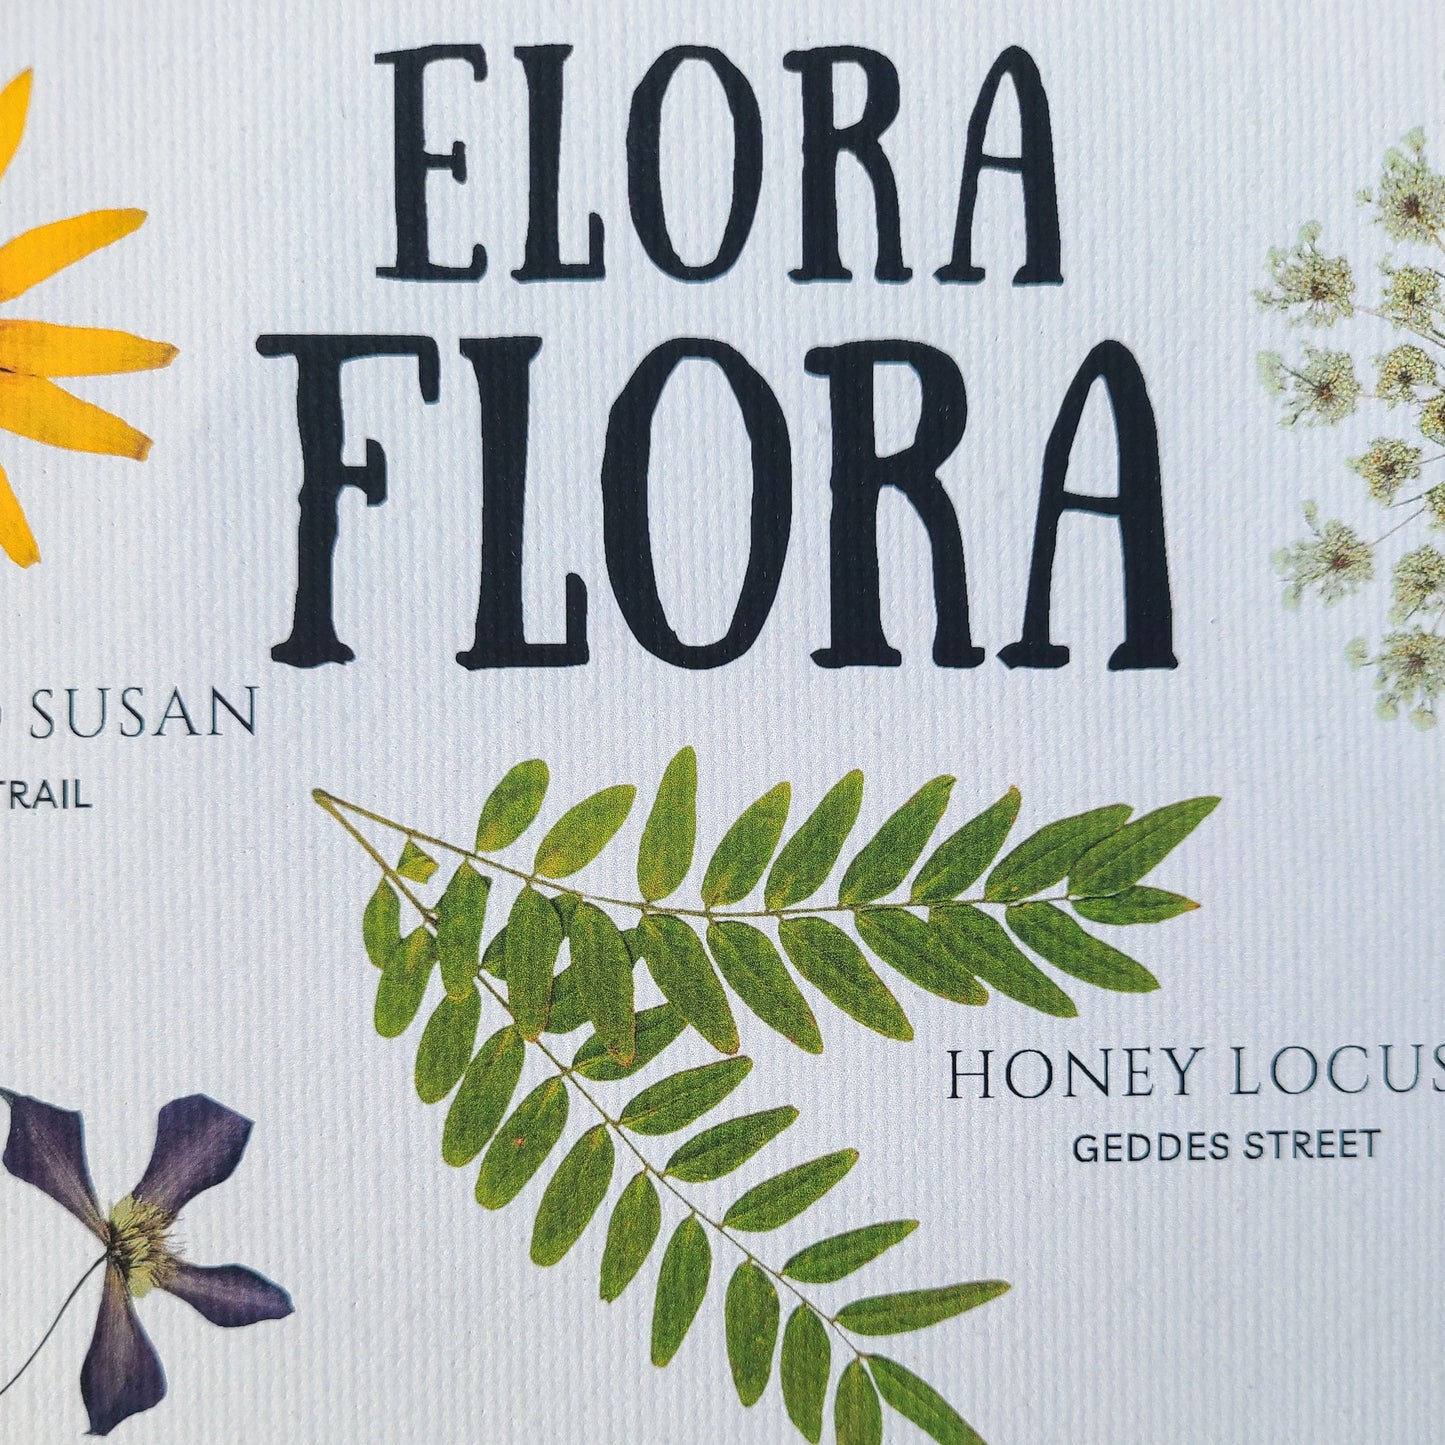 Elora Flora